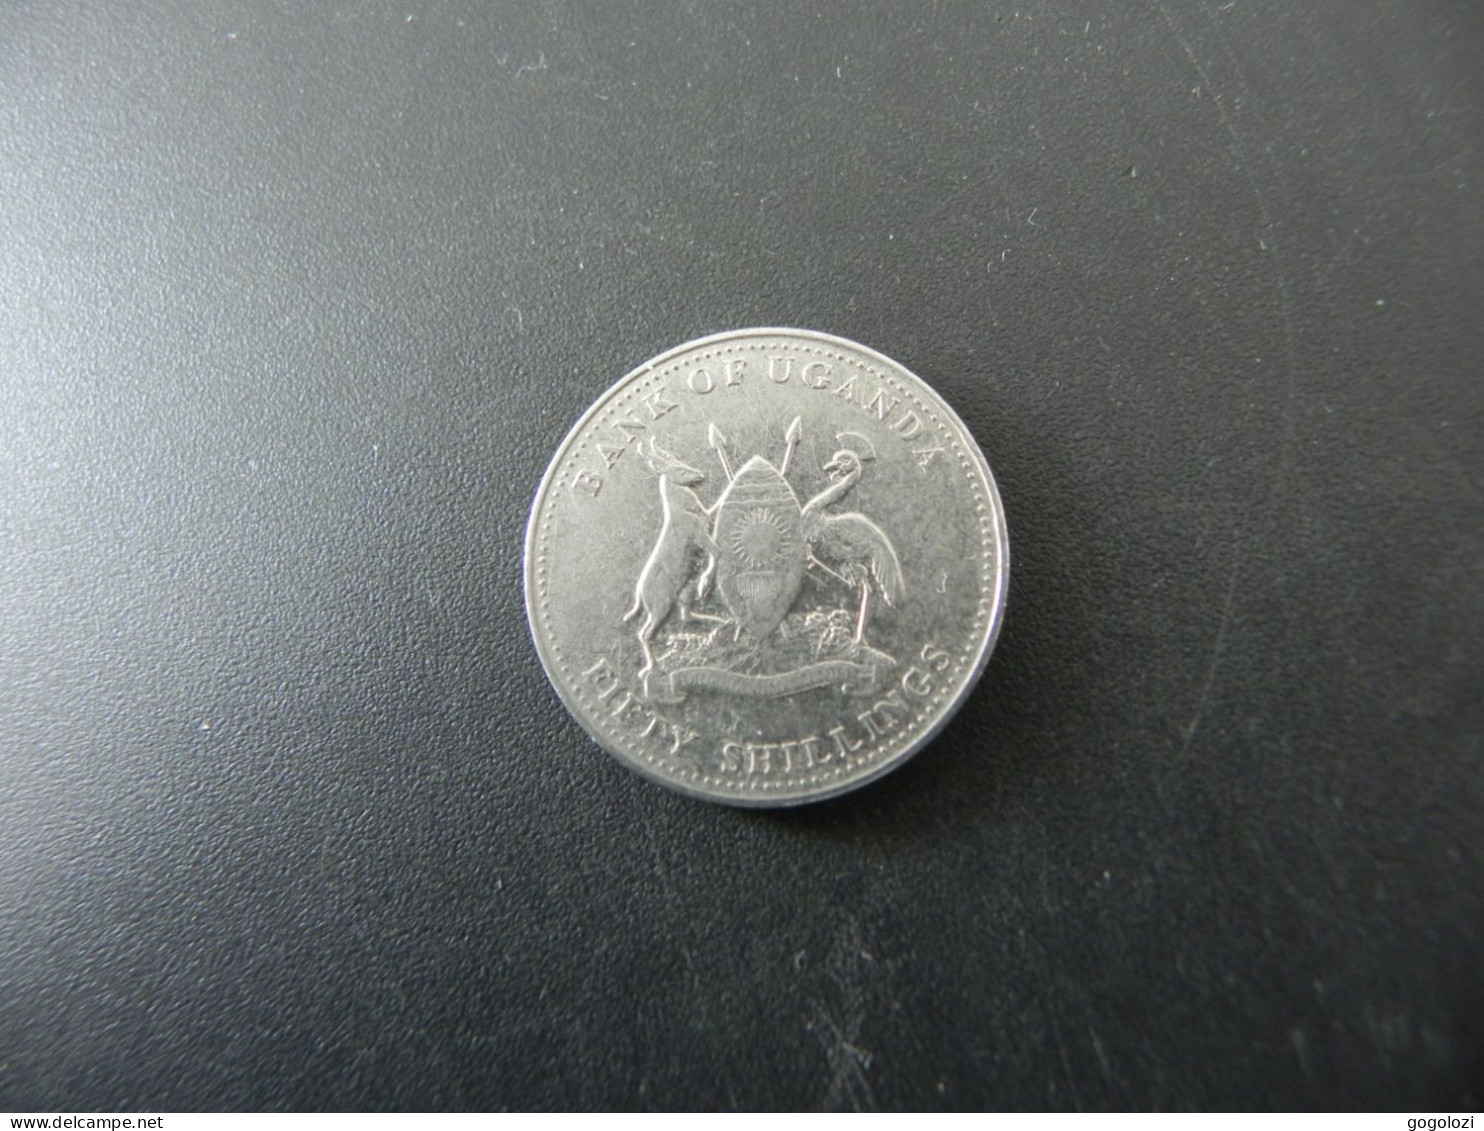 Uganda 50 Shillings 1998 - Uganda